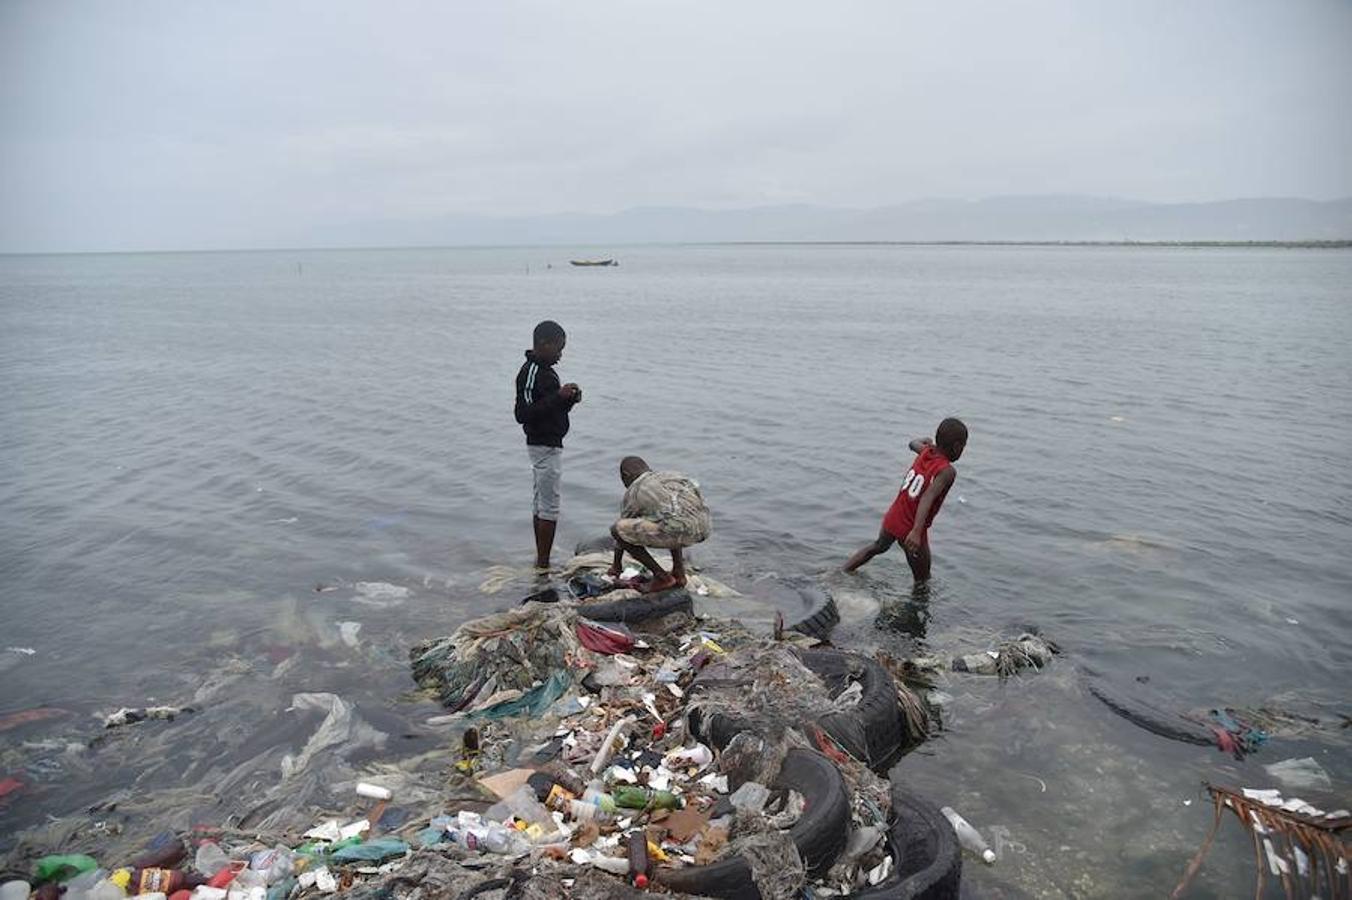 Niños juegan con la basura arrastrada por el huracán hacia la playa en Haití